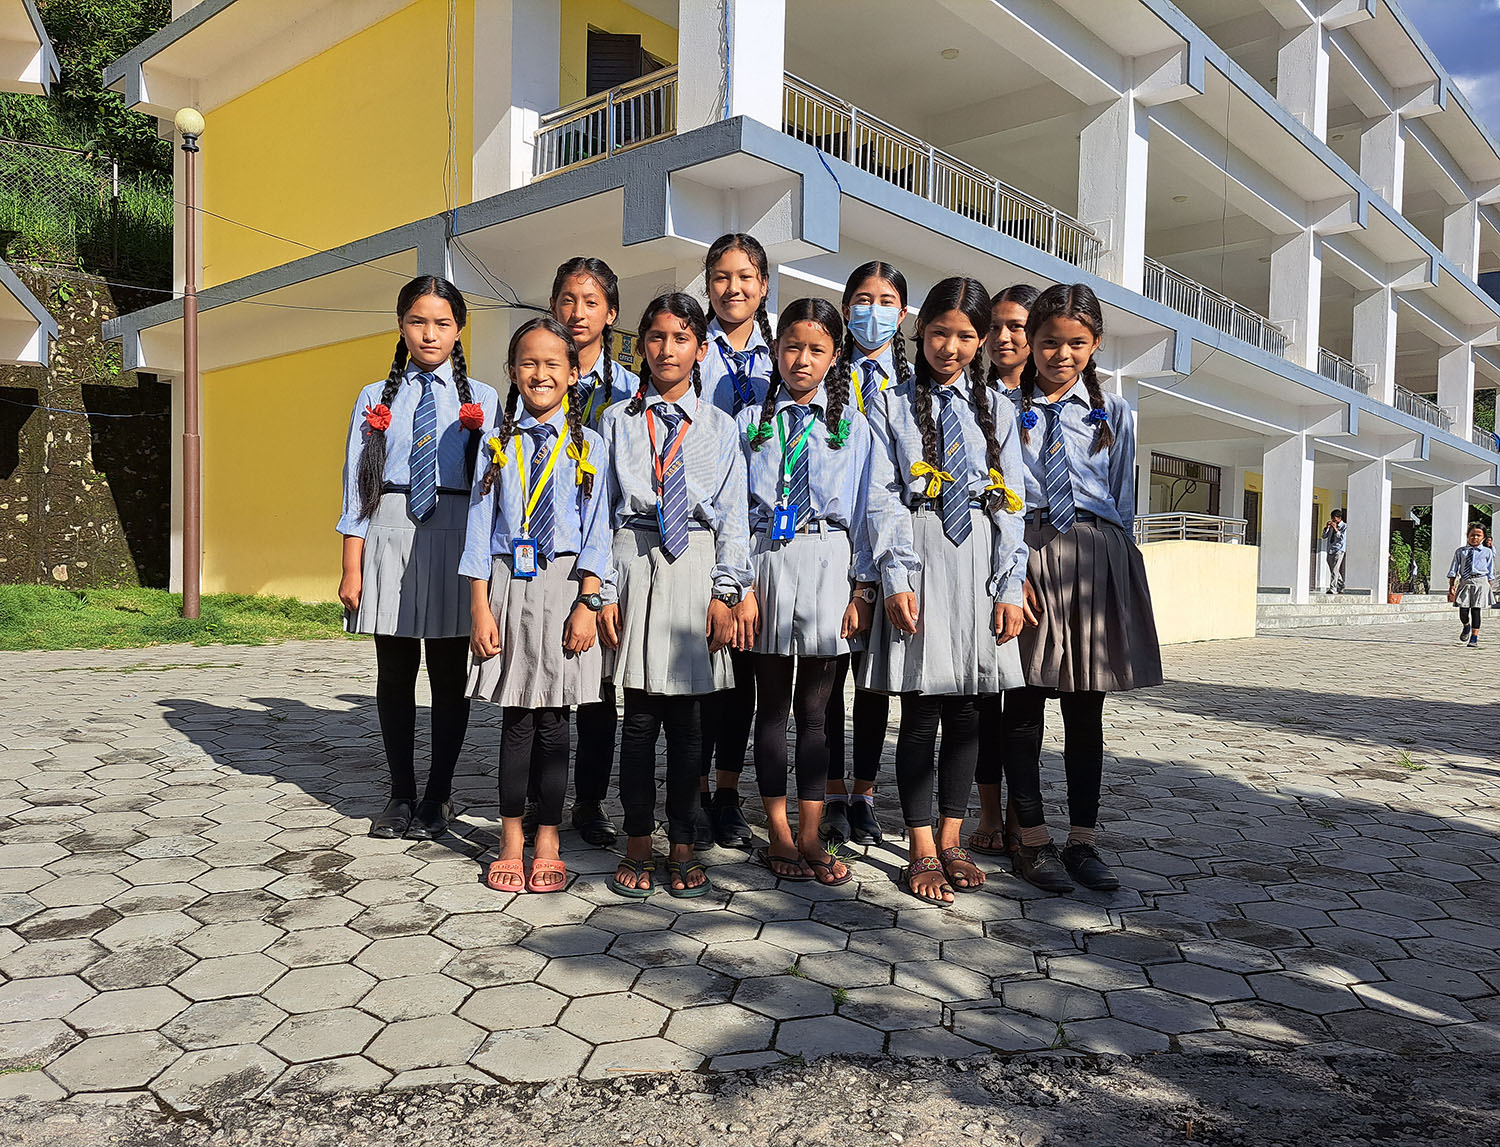 Ryhmä nepalilaisia tyttöjä koulupuvuissaan